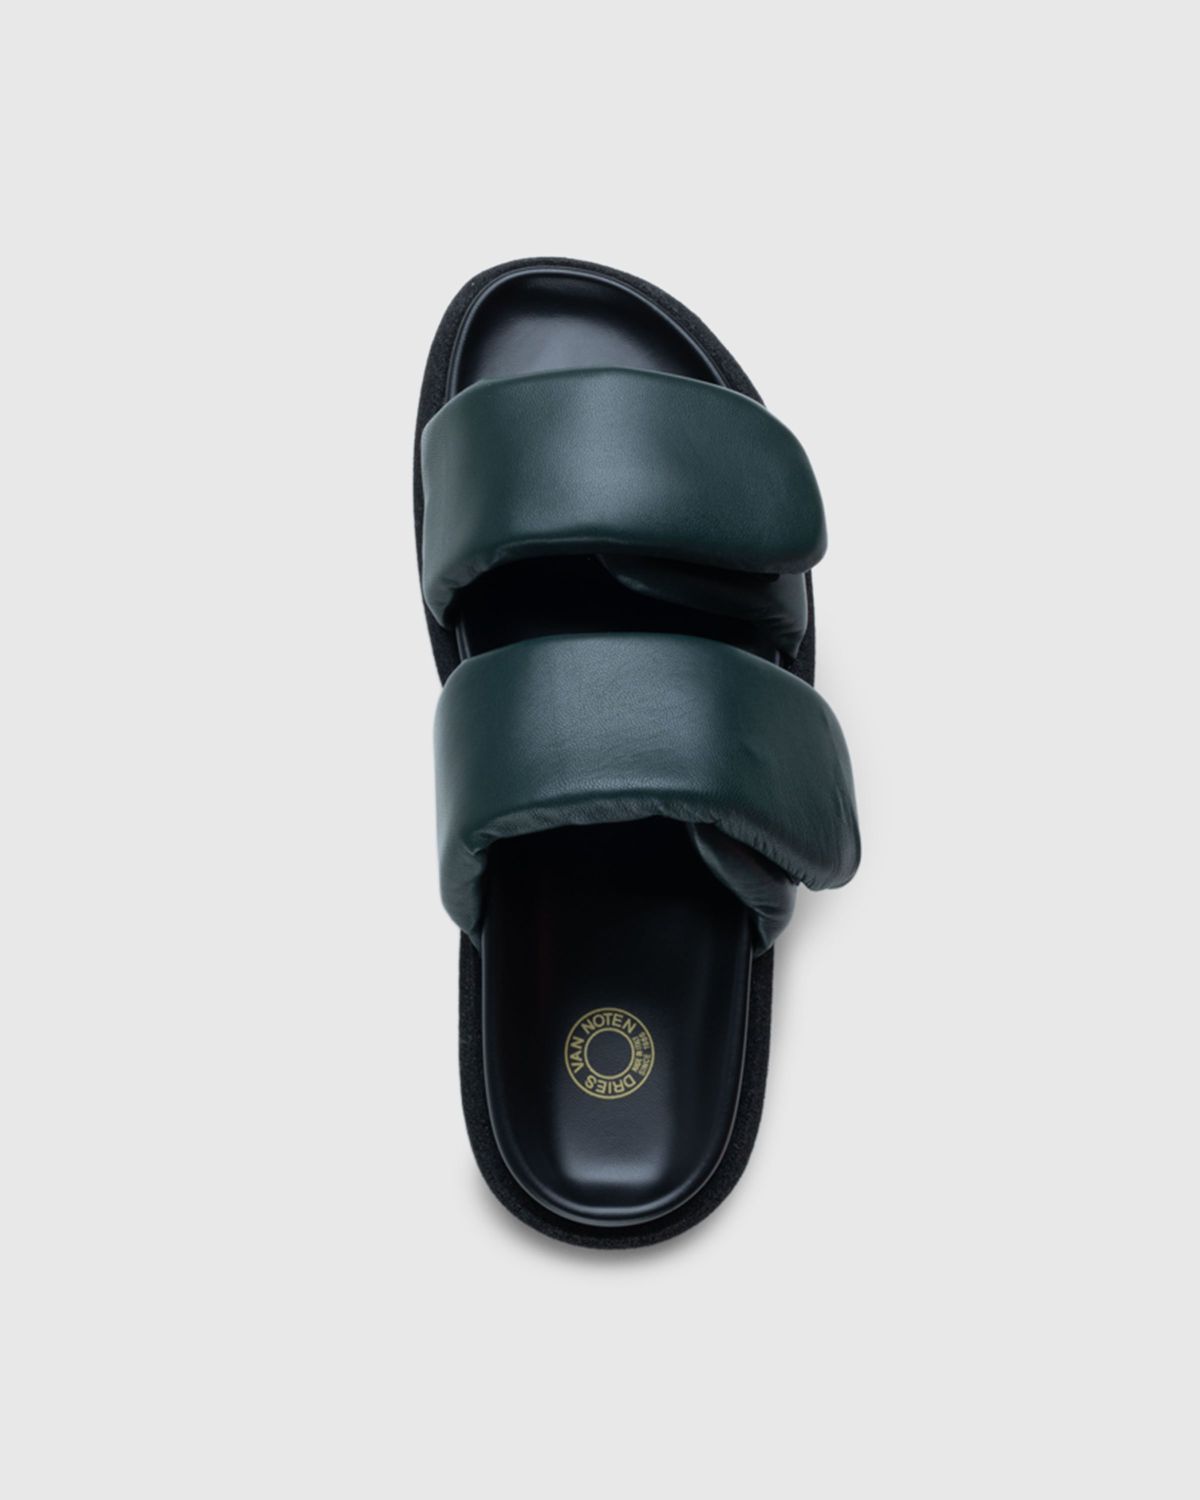 Dries van Noten – Leather Platform Sandals Green - Sandals - Green - Image 5